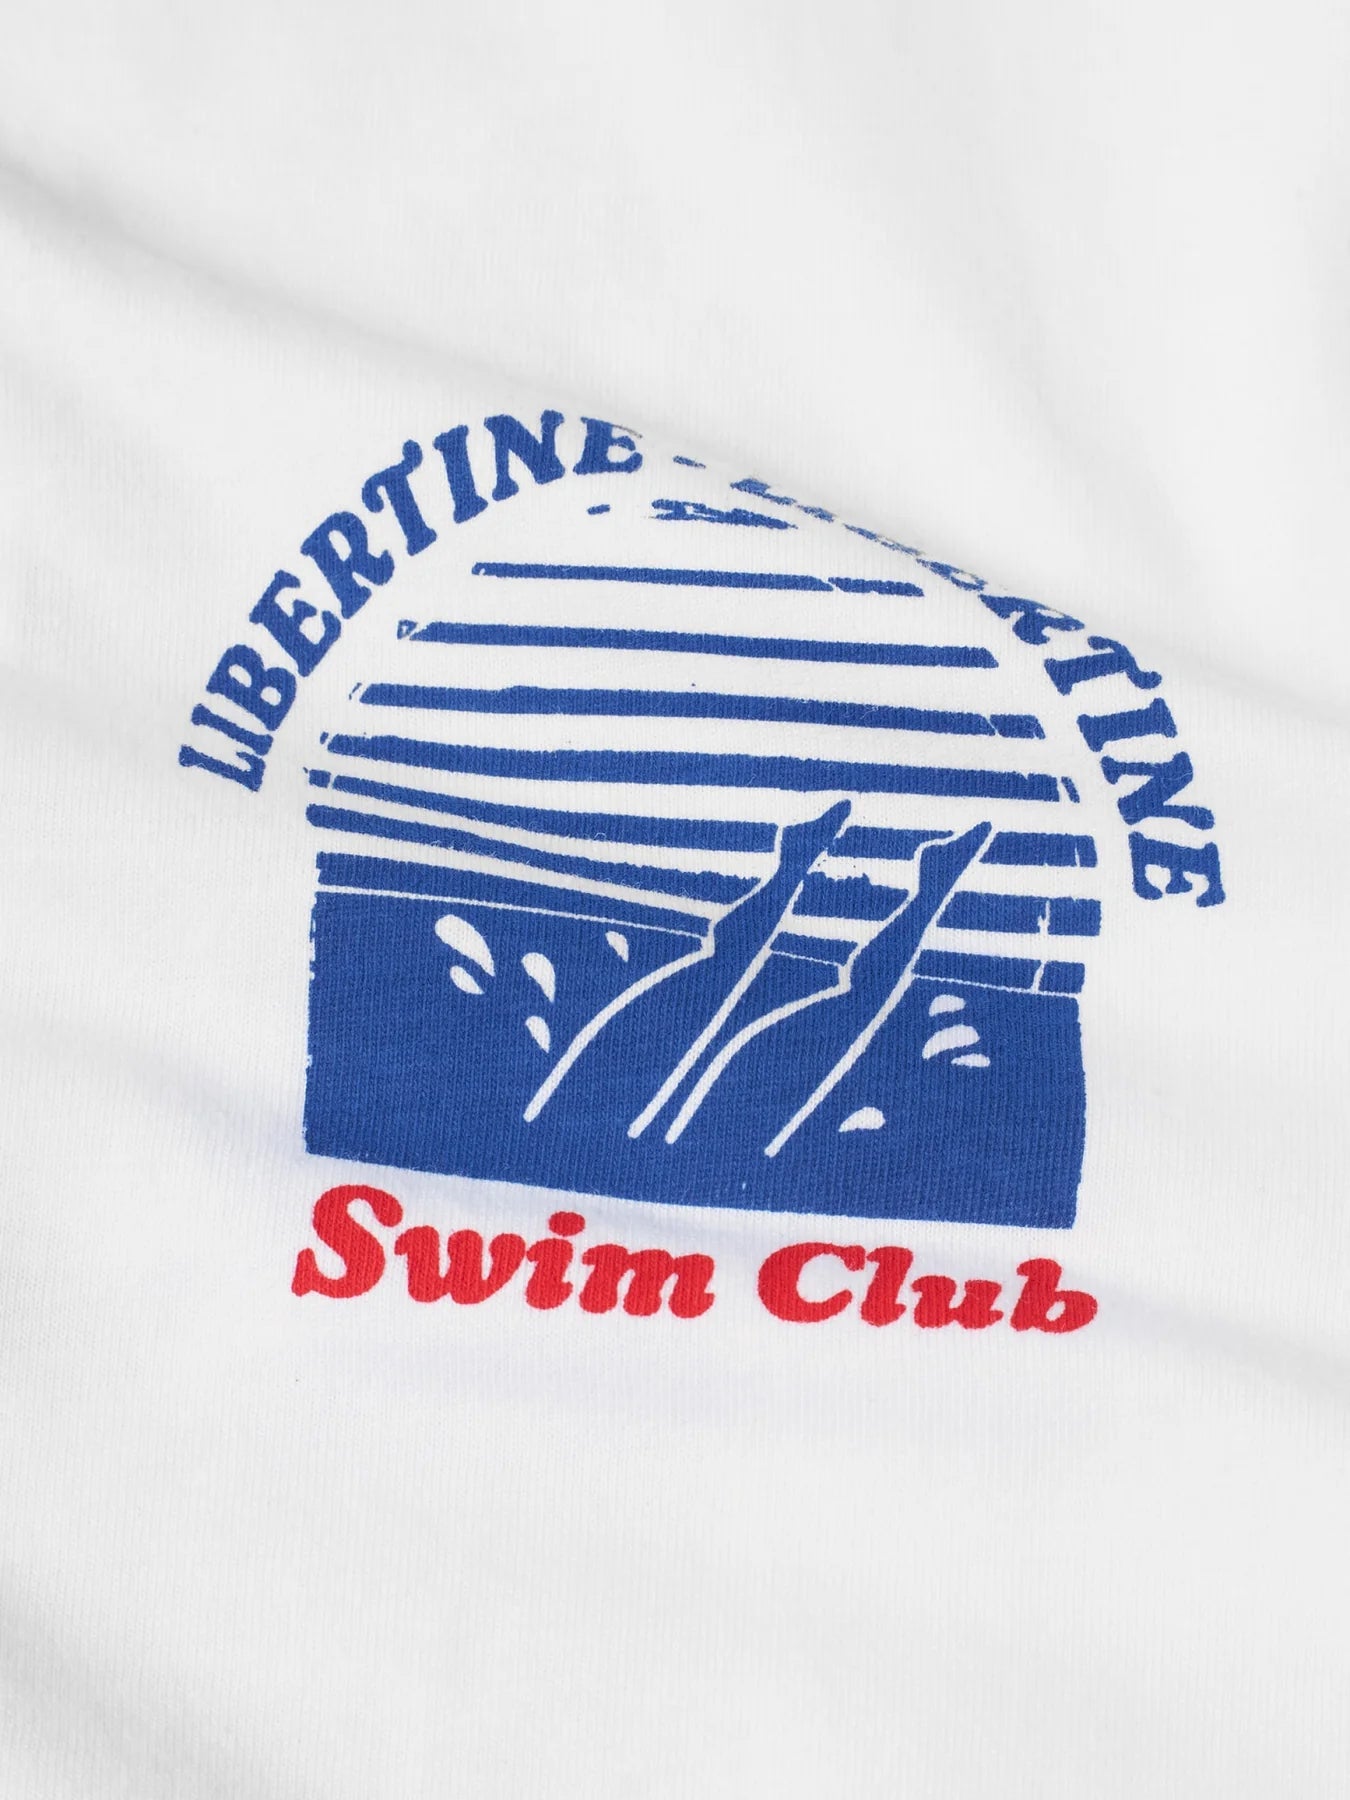 Libertine-Libertine Beat Swim Club T-Shirt - White T-shirt Libertine-Libertine 